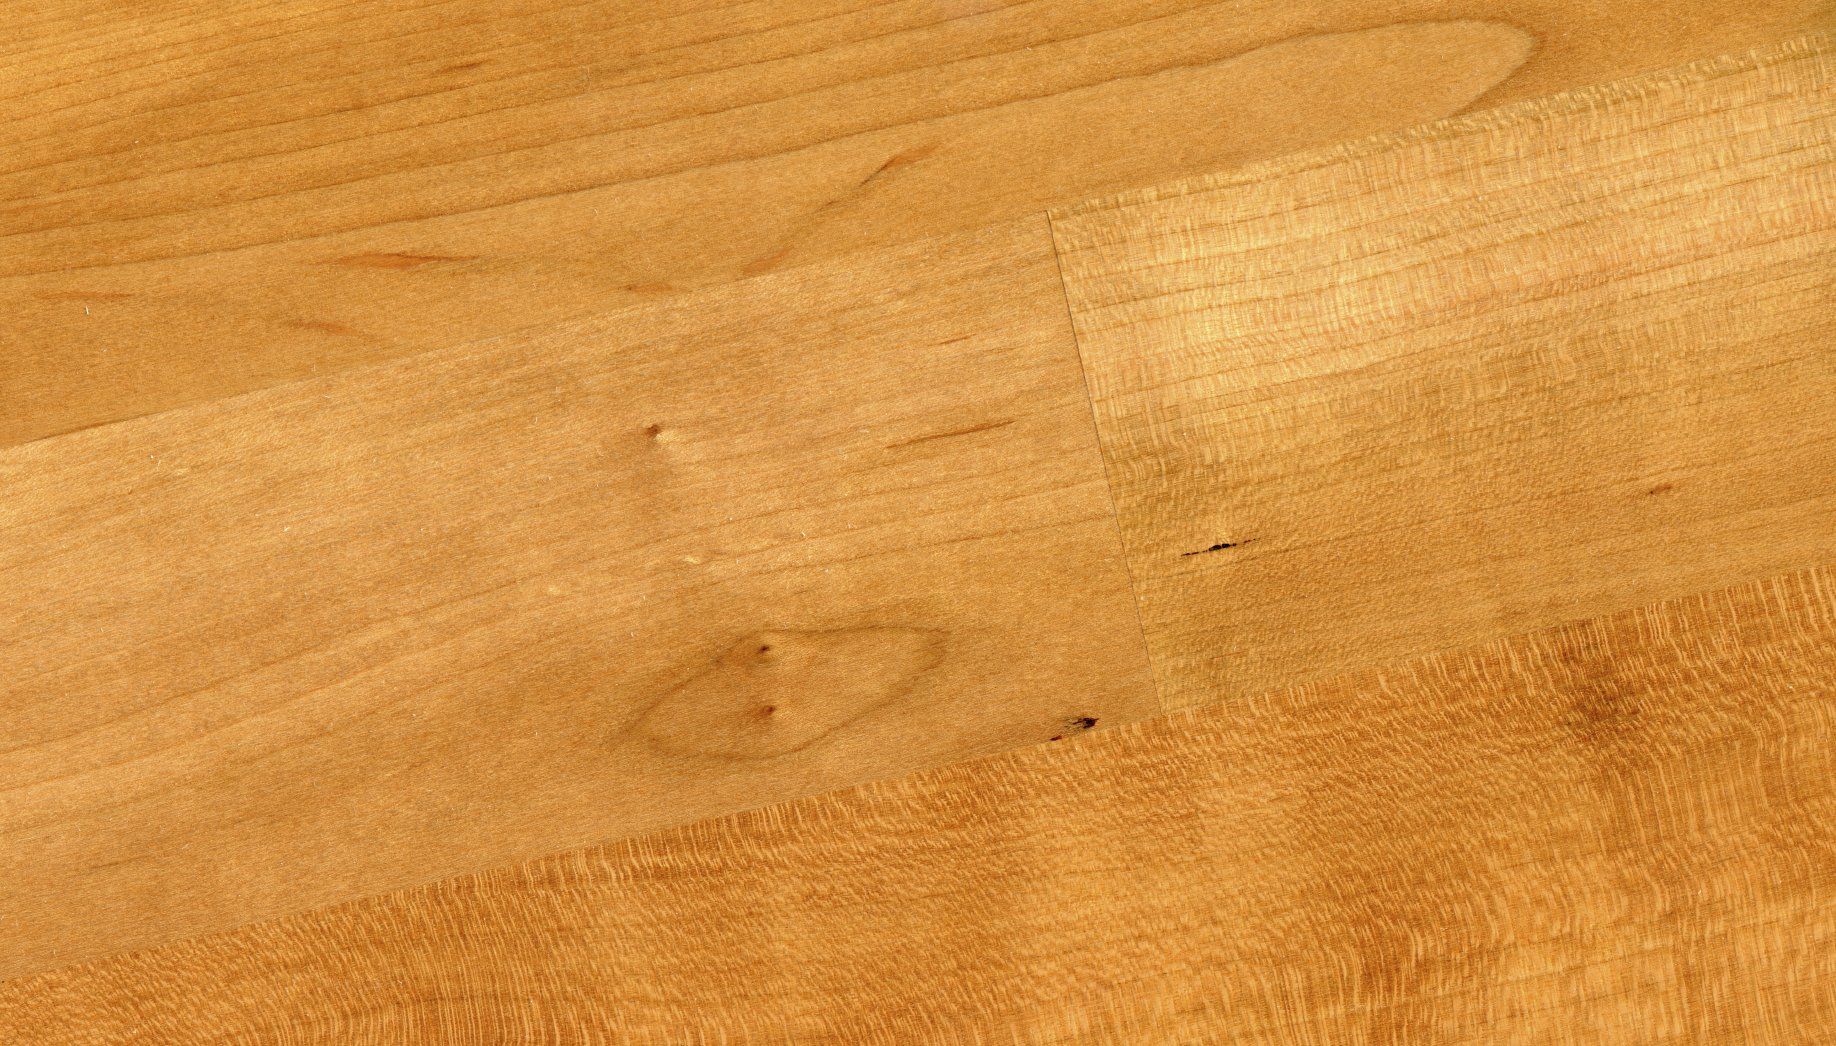 Fotografía de piso de madera